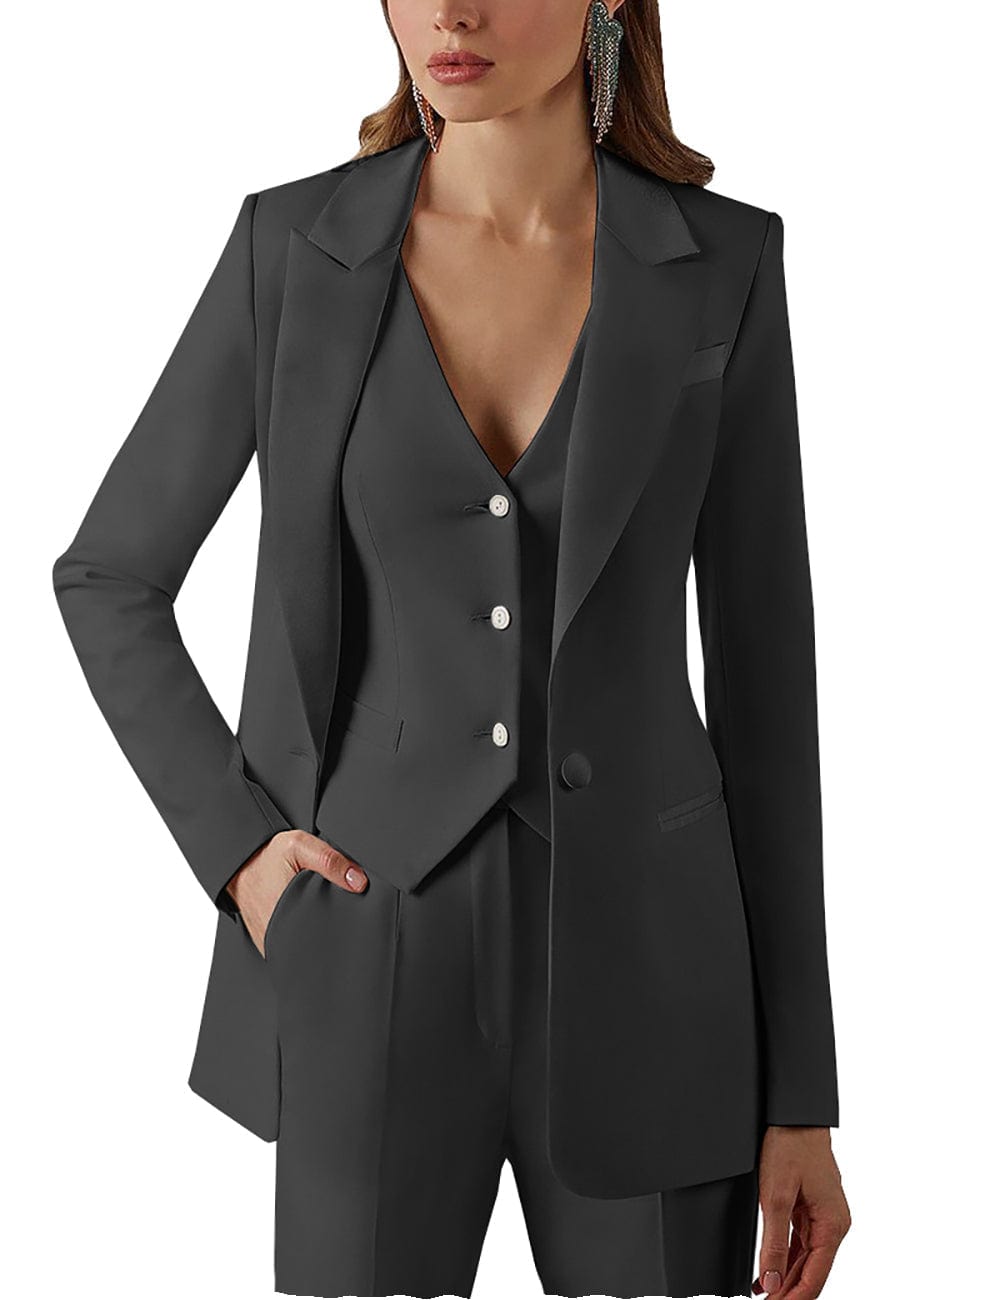 solovedress 3 Pieces Single Buttons Peak Lapel Women Suit (Blazer+vest+Pants)